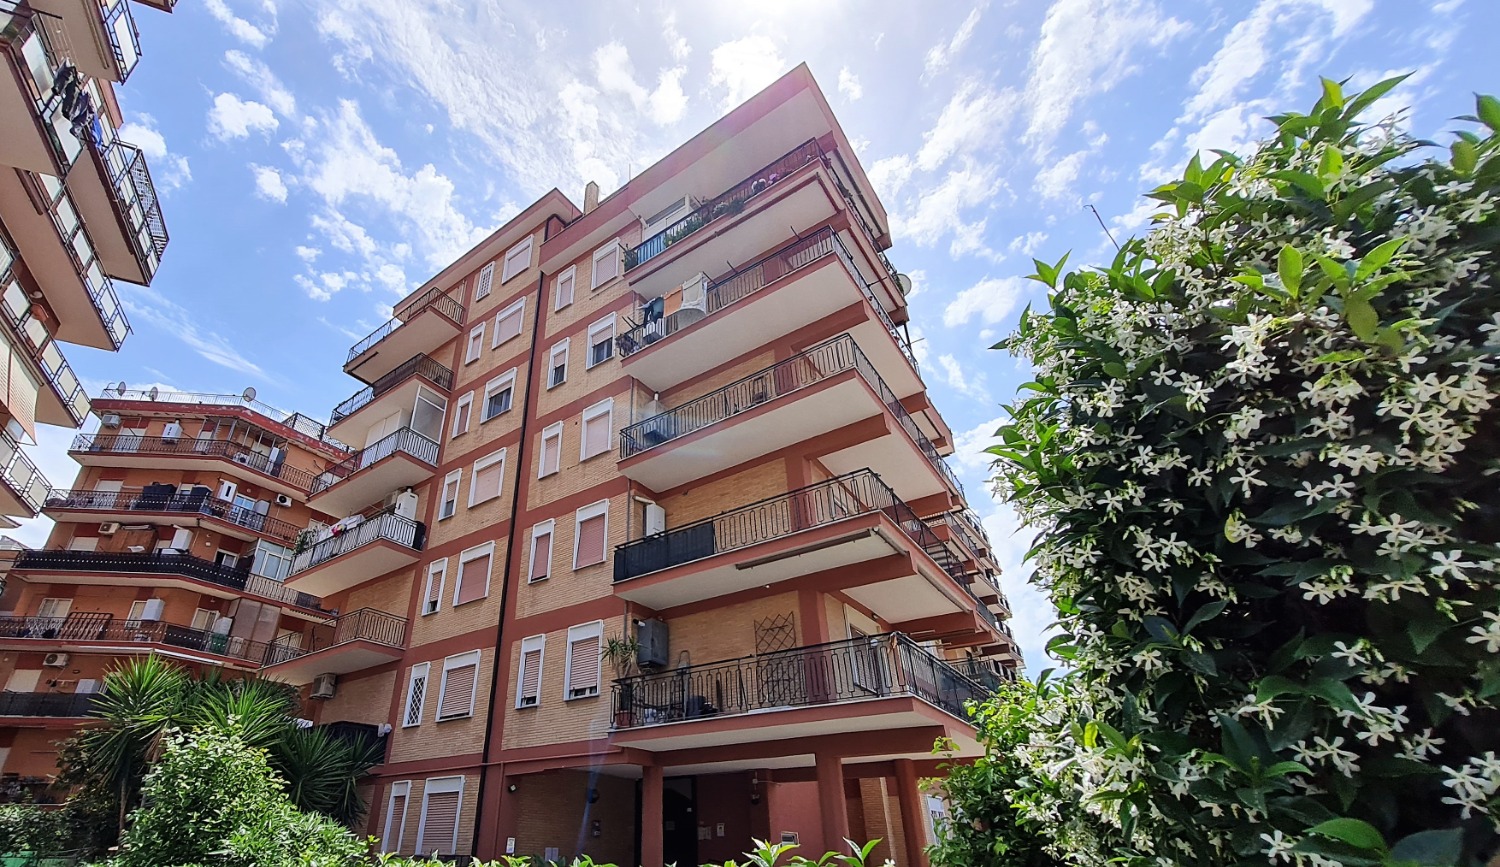 Appartamento in vendita a Ladispoli, 4 locali, prezzo € 190.000 | CambioCasa.it